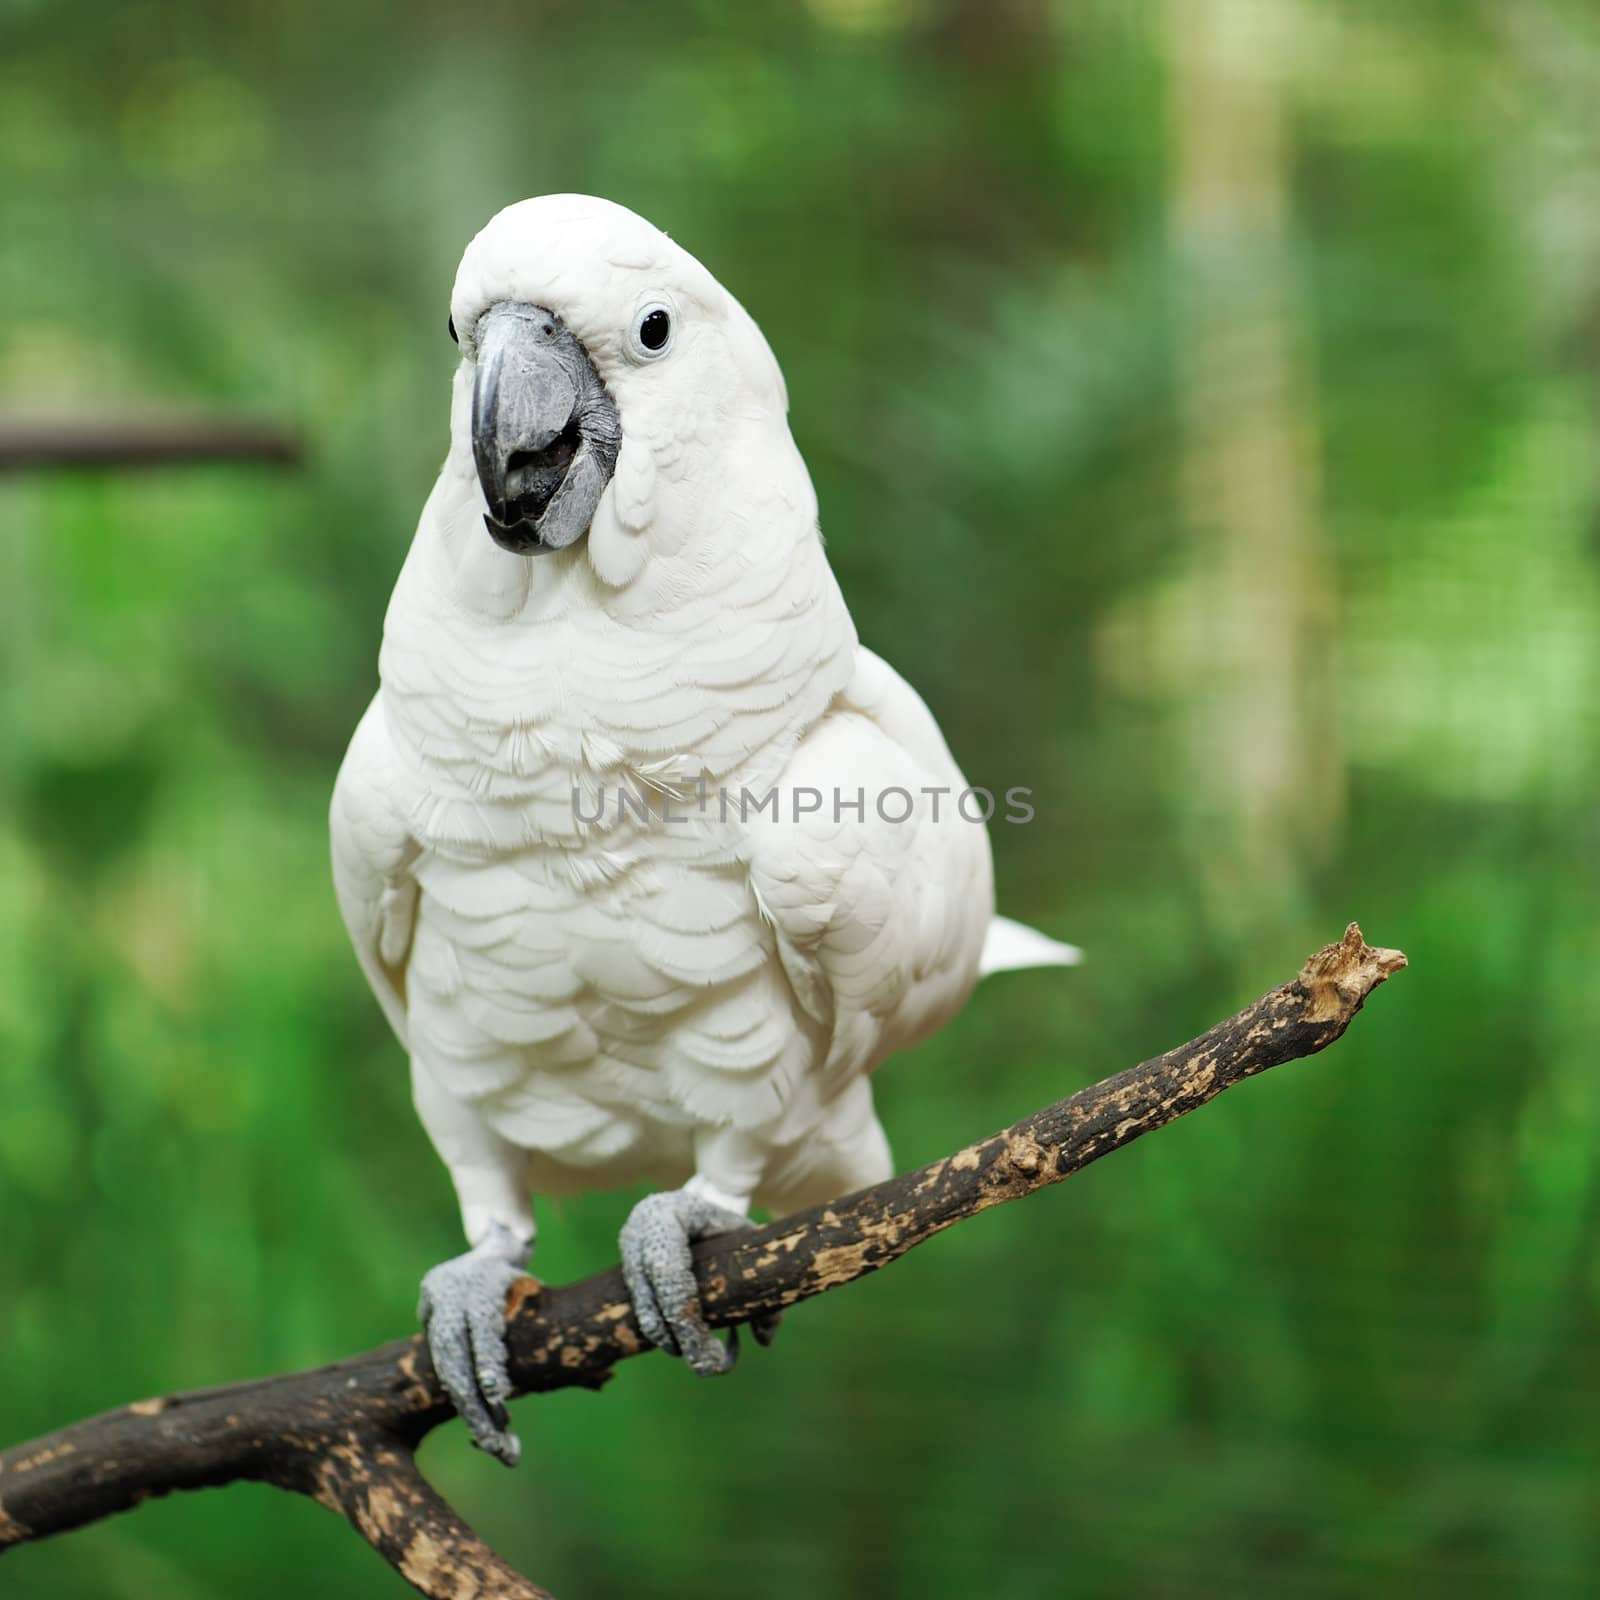 Parrot bird by haveseen